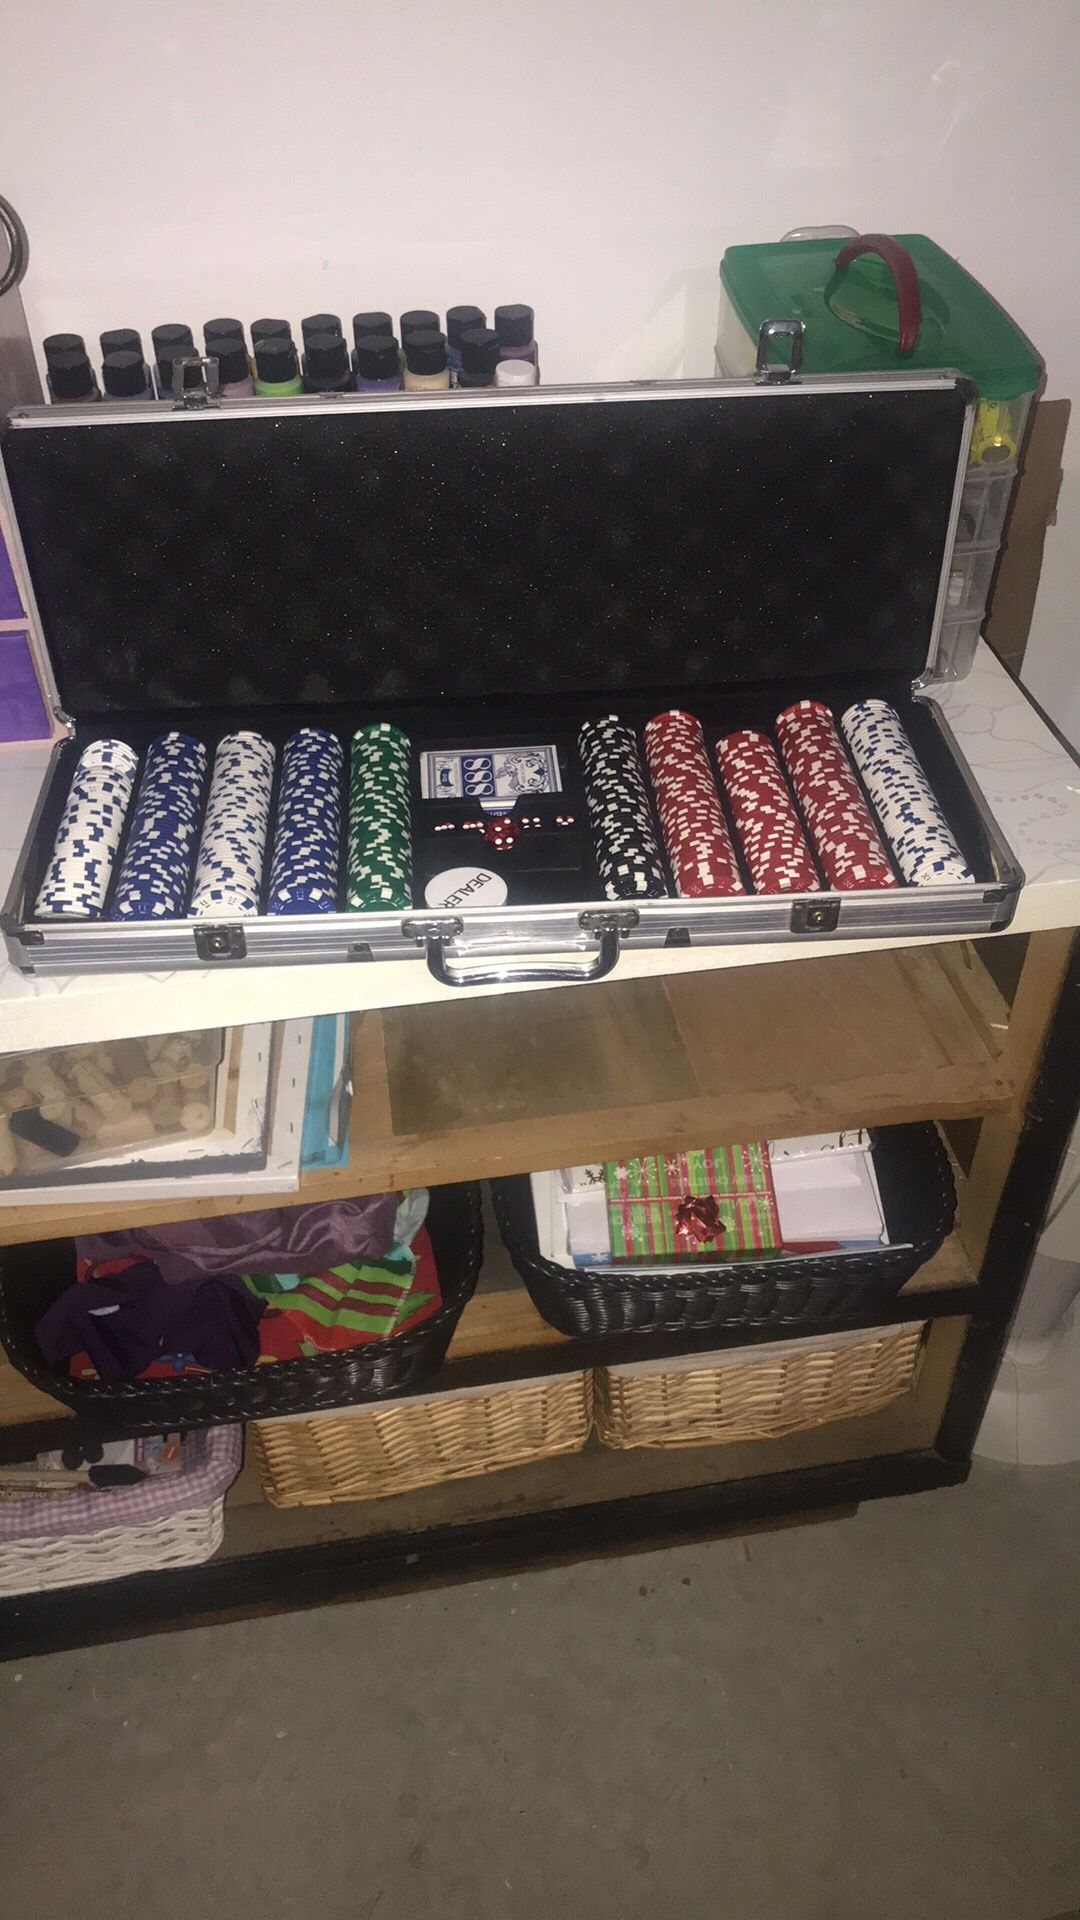 Poker set in silver case